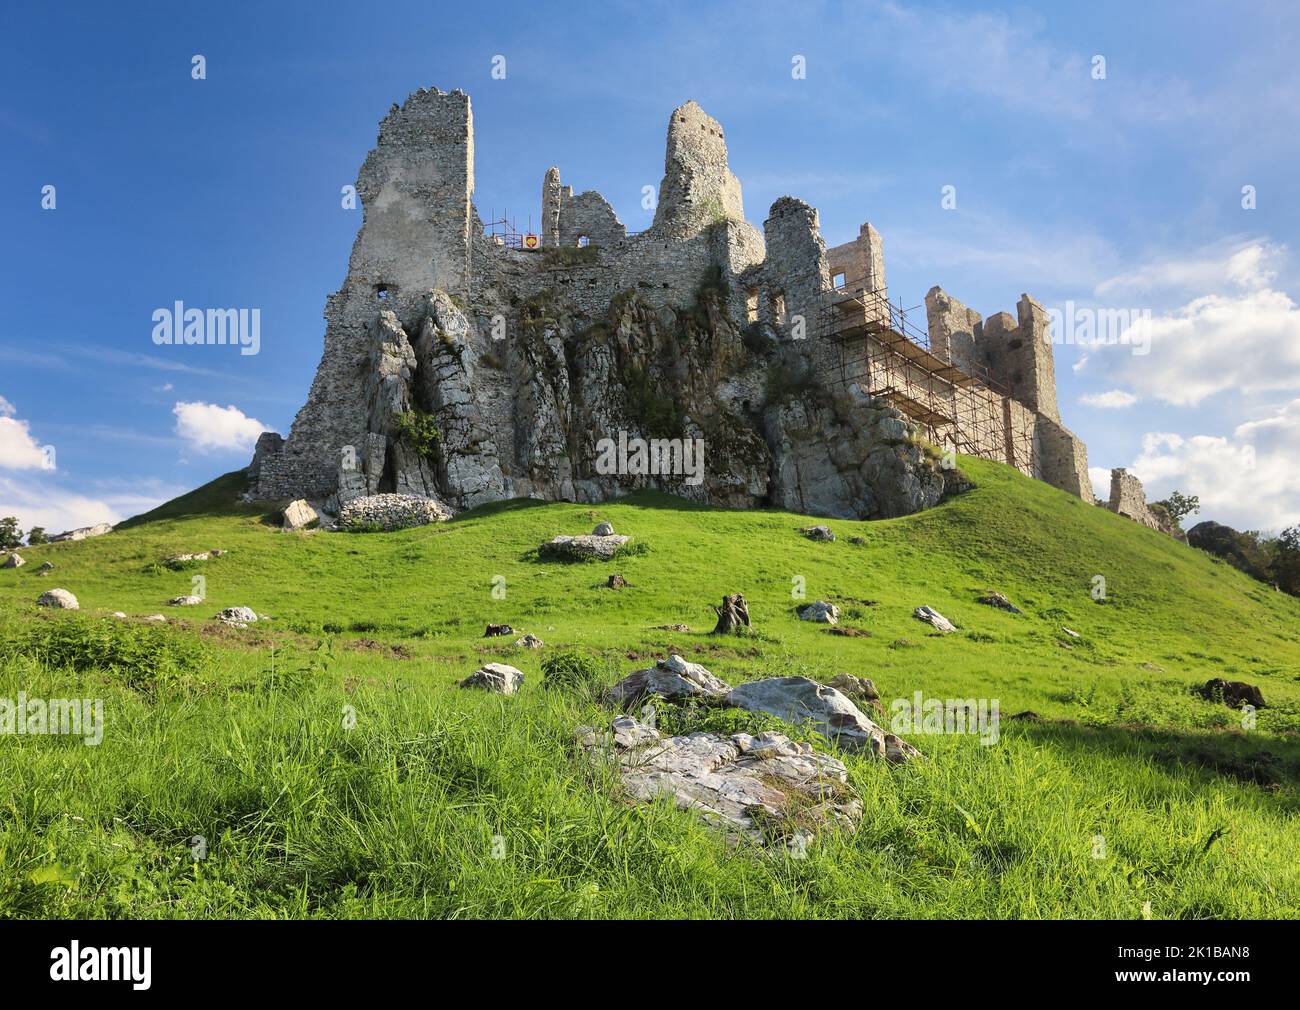 Rovina del castello Hrusov in Slovacchia Foto Stock